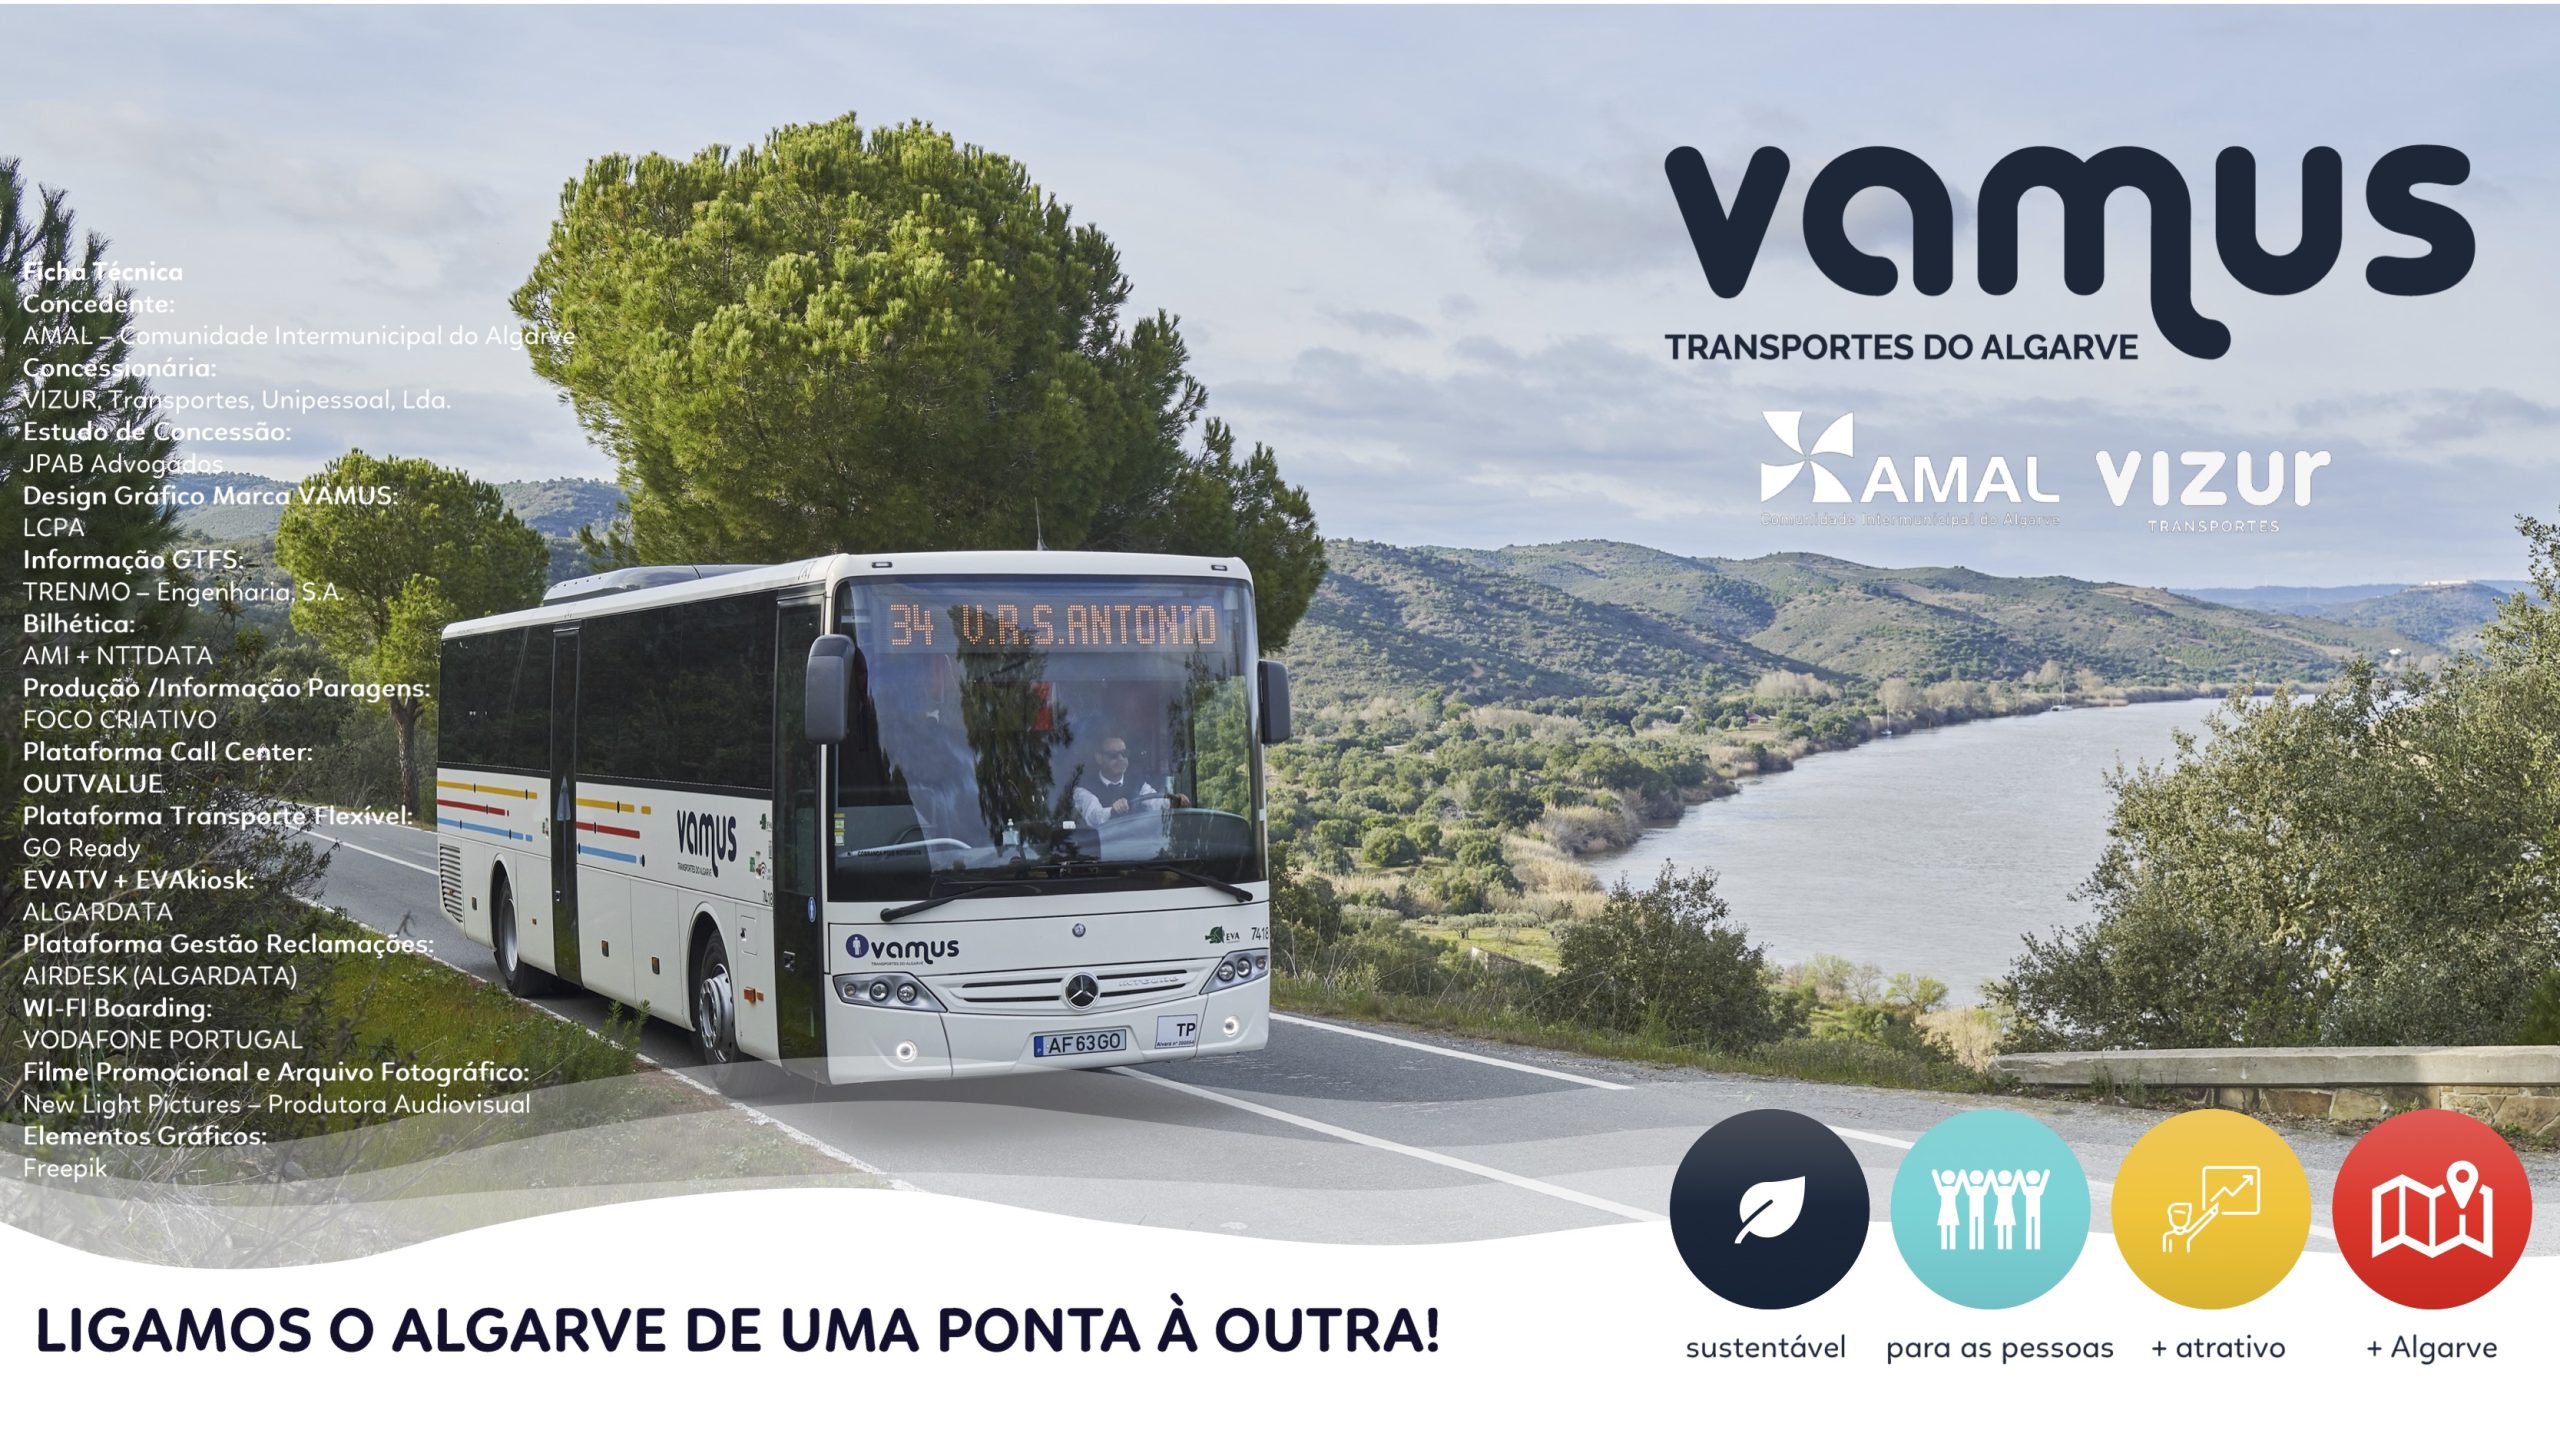 Ficha tecnica do projeto VAMUS a operar no Algarve